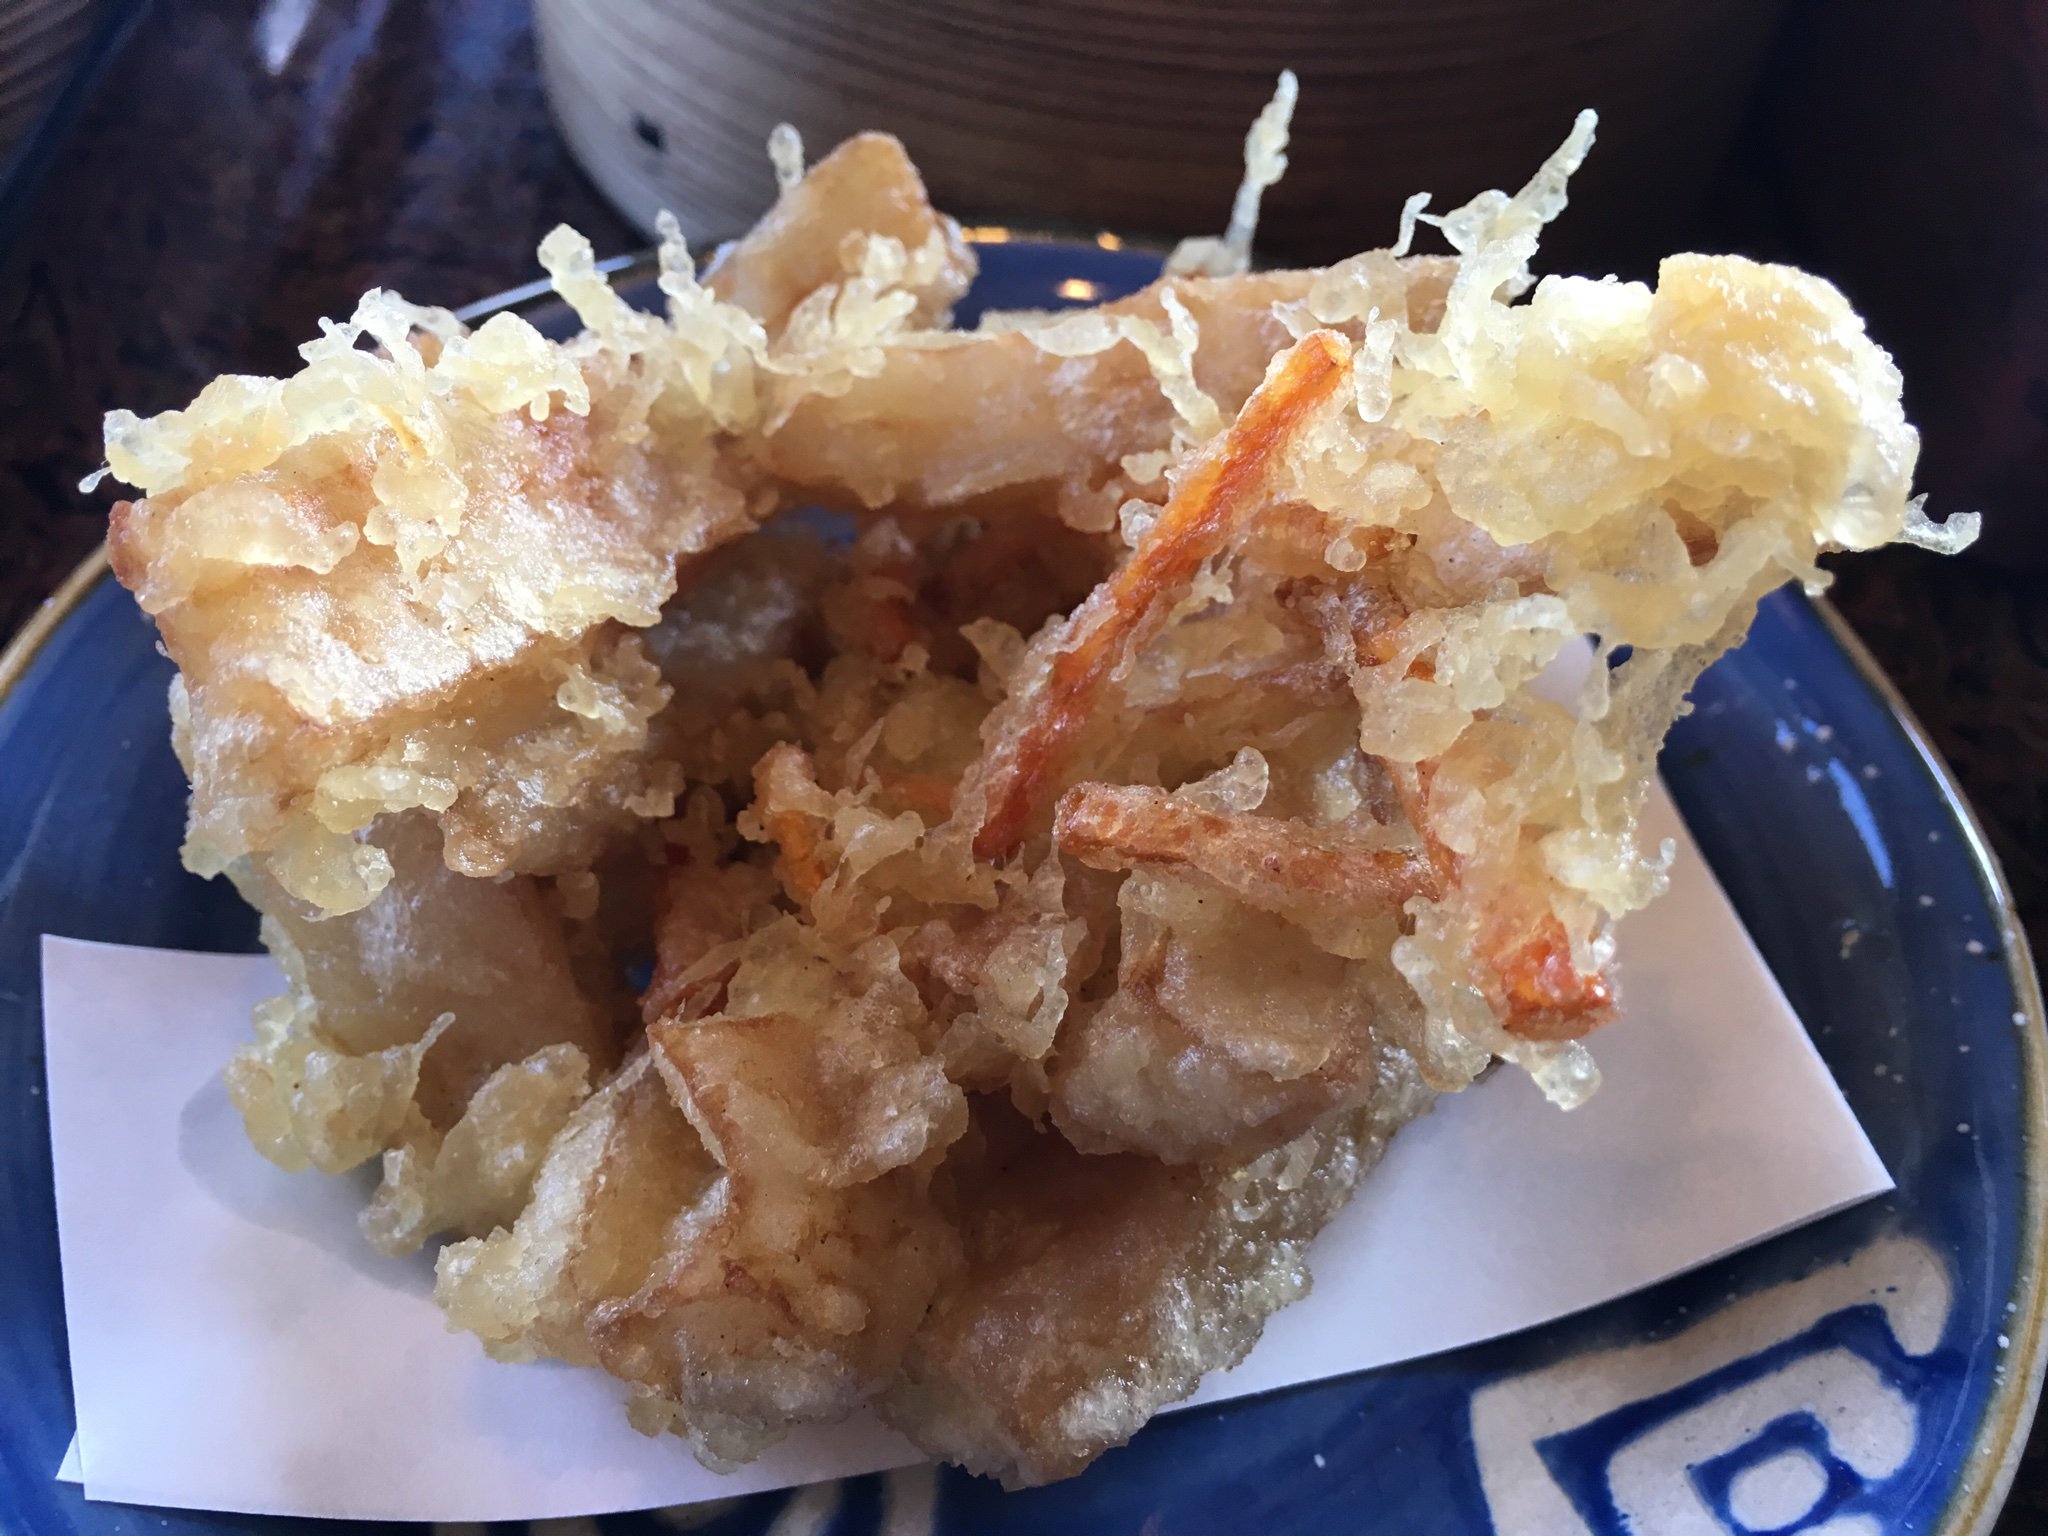 ふじのん もり陣さんのよりもい席でランチ 肉汁うどんとハスの天ぷら ハスはサクサクの食感でお初の感覚 美味 もり陣 館林